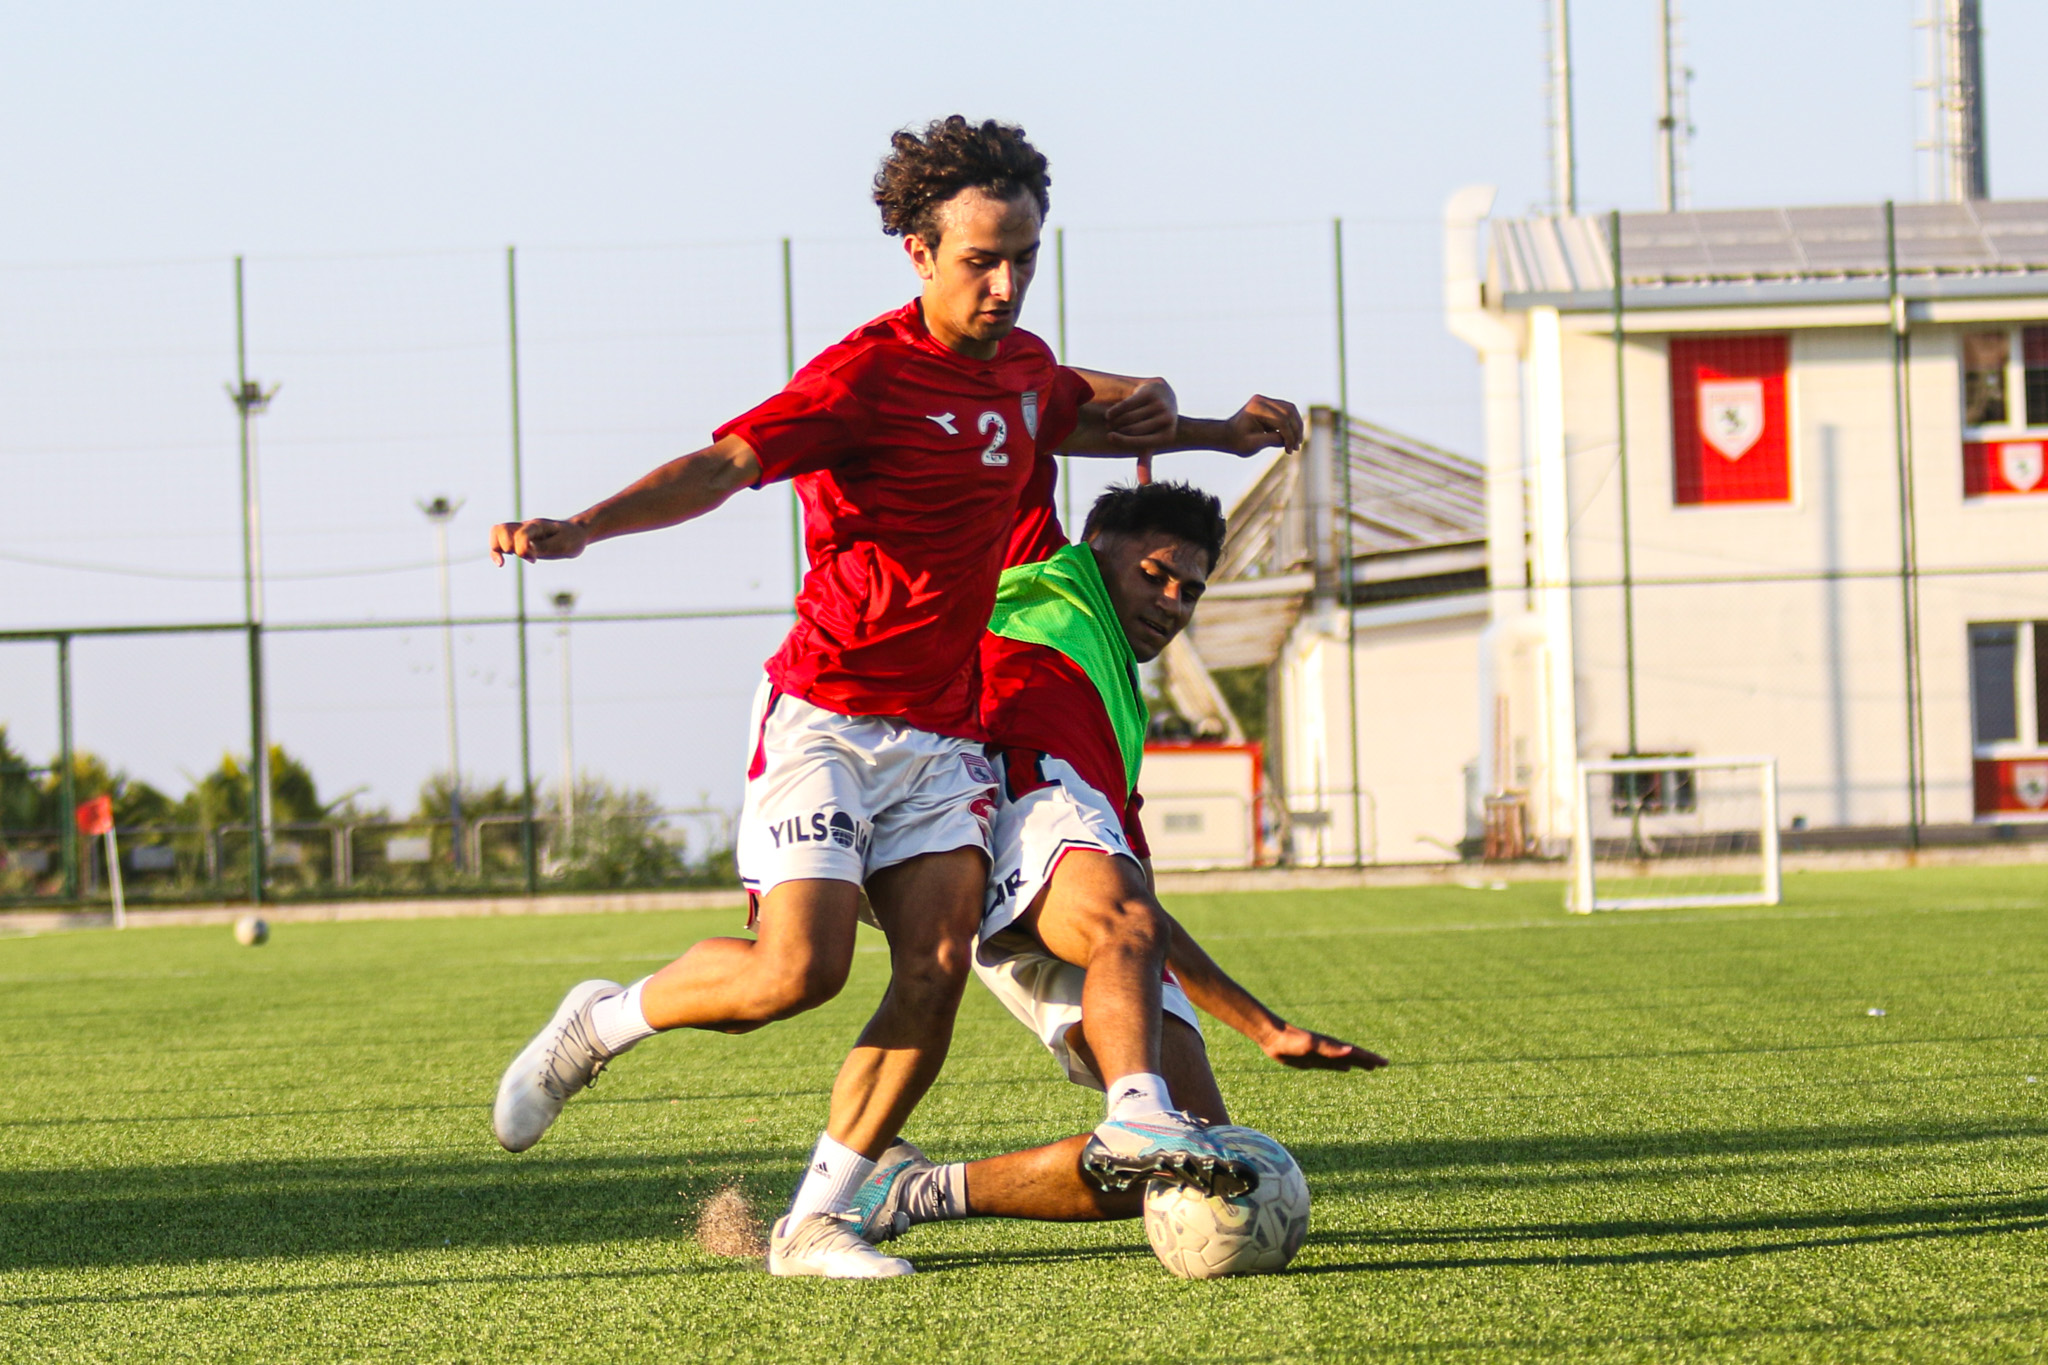  Yılport Samsunspor U17 takımı, Gençlerbirliği maçının hazırlıklarını sürdürüyor